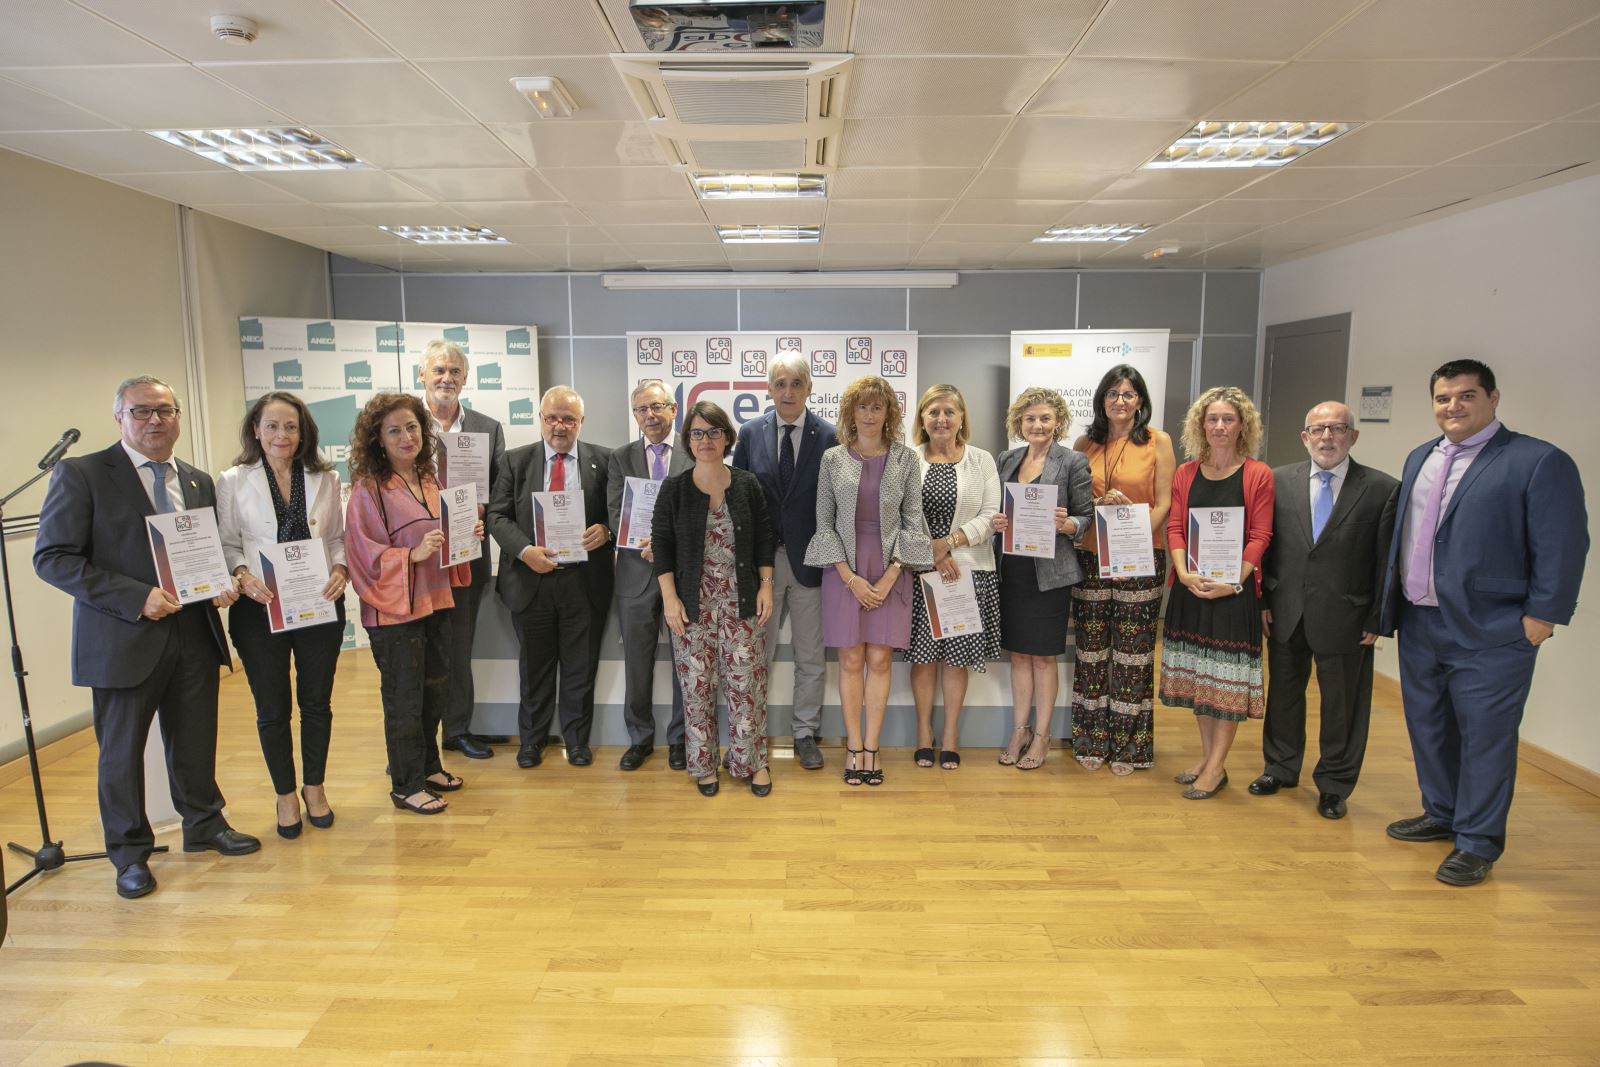 Entregados los certificados del sello de calidad en edición académica CEA-APQ, obtenidos en la convocatoria de 2018 / Rodrigo Mena Ruiz